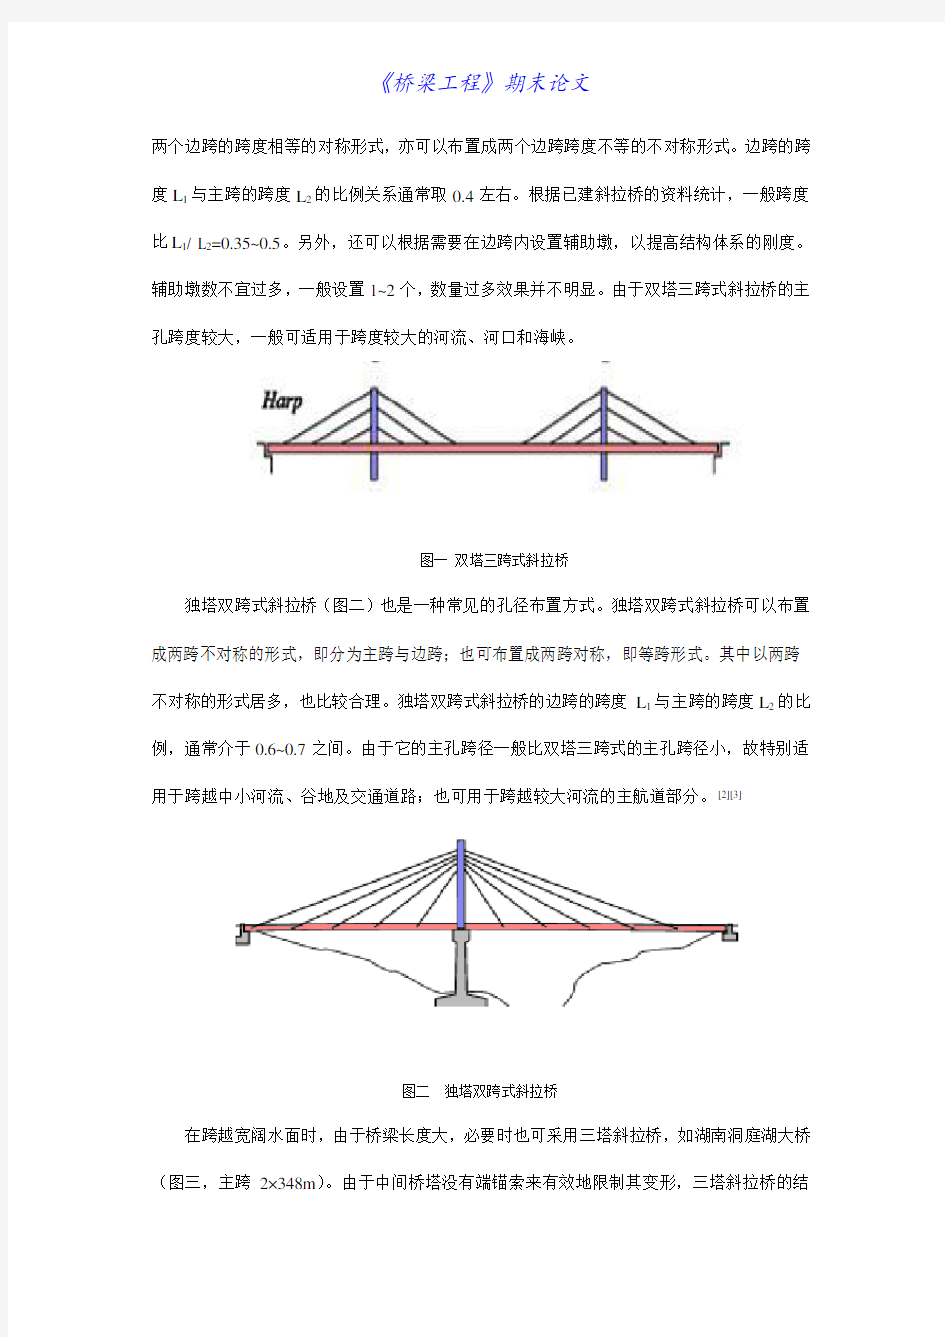 几种常见形式斜拉桥的特点浅析及设计计算